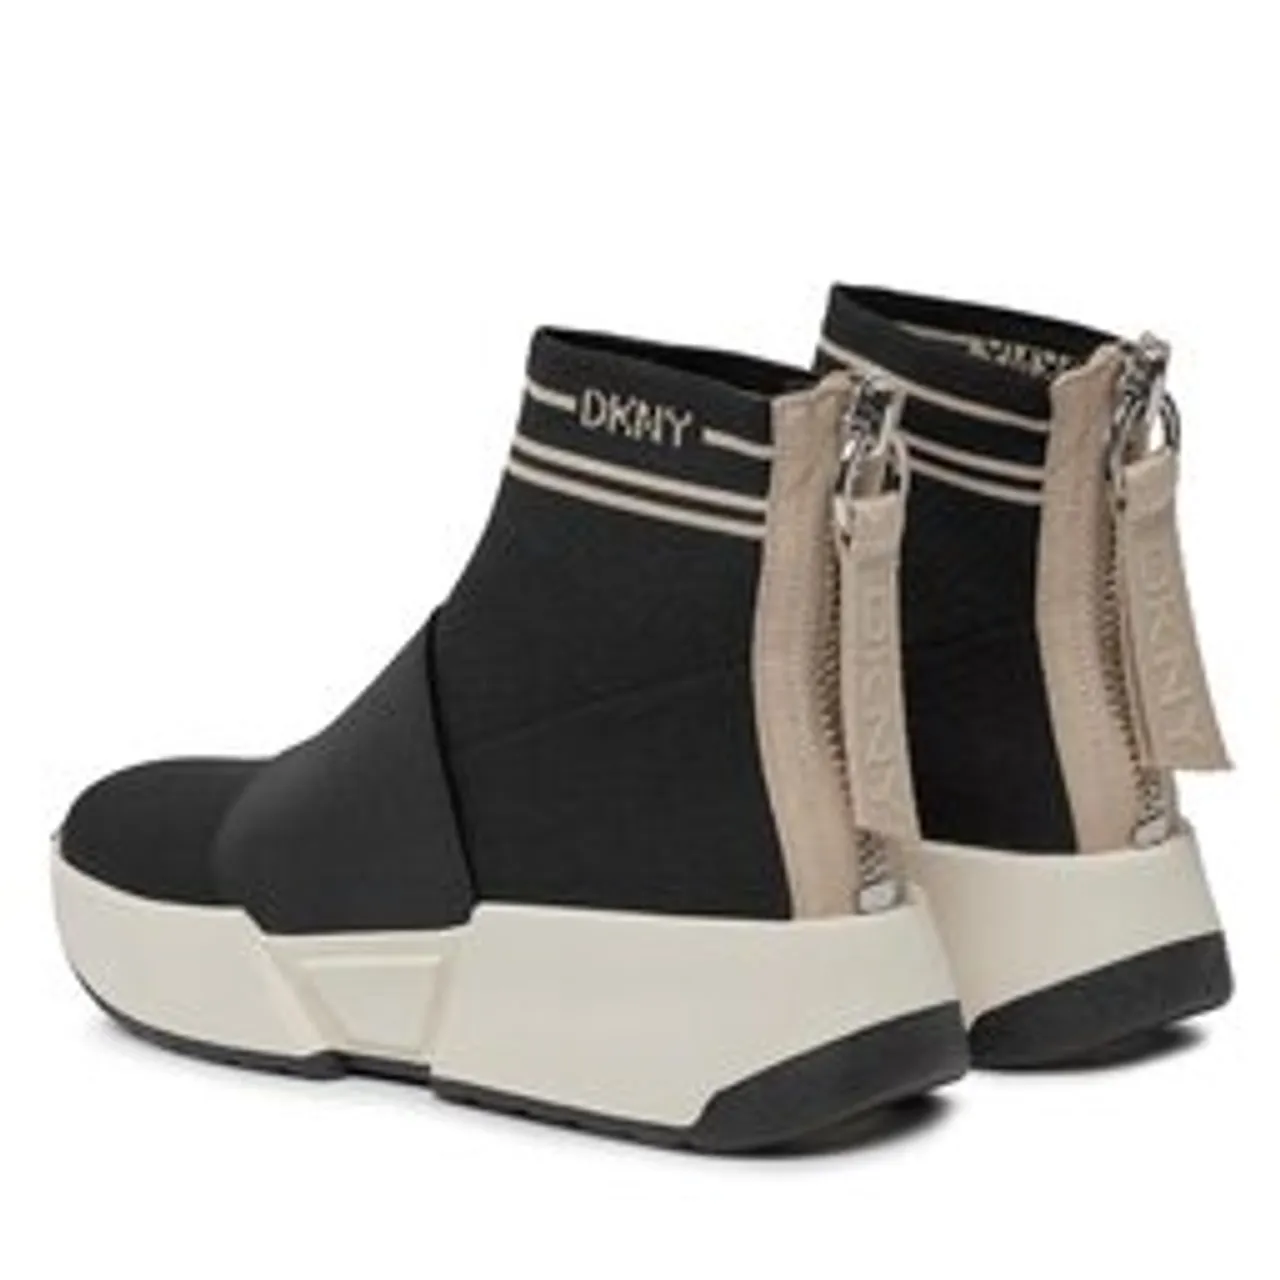 Sneakers DKNY Marini K1402637 Blk/Hmtpn Chno 9